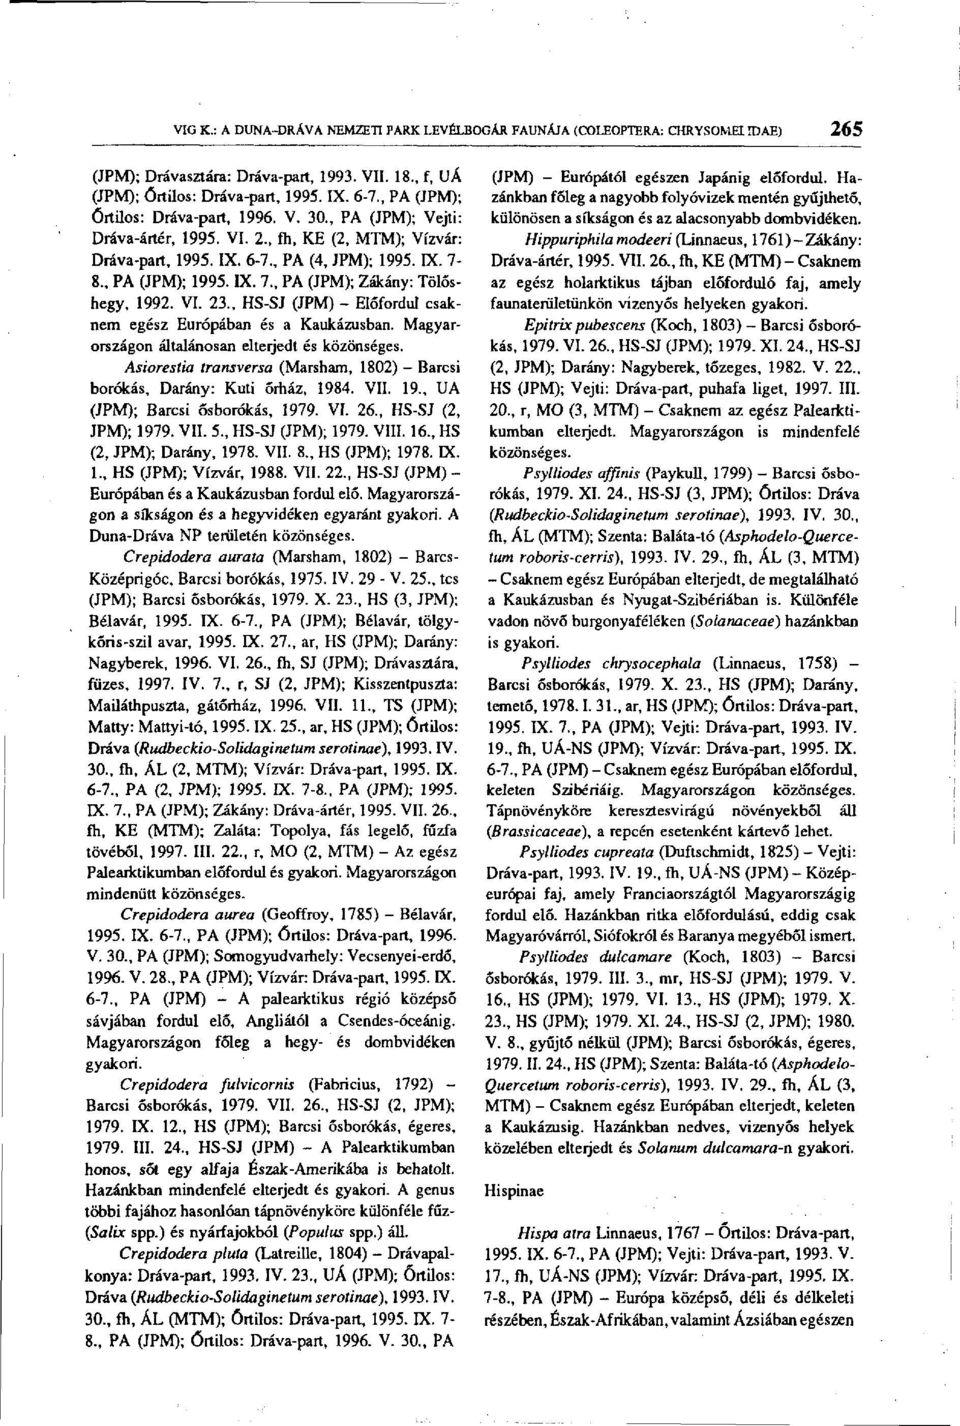 8., PA (JPM); 1995. LX. 7., PA (JPM); Zákány: Tölóshegy, 1992. VI. 23.. HS-SJ (JPM) - Előfordul csaknem egész Európában és a Kaukázusban. Magyarországon általánosan elterjedt és közönséges.